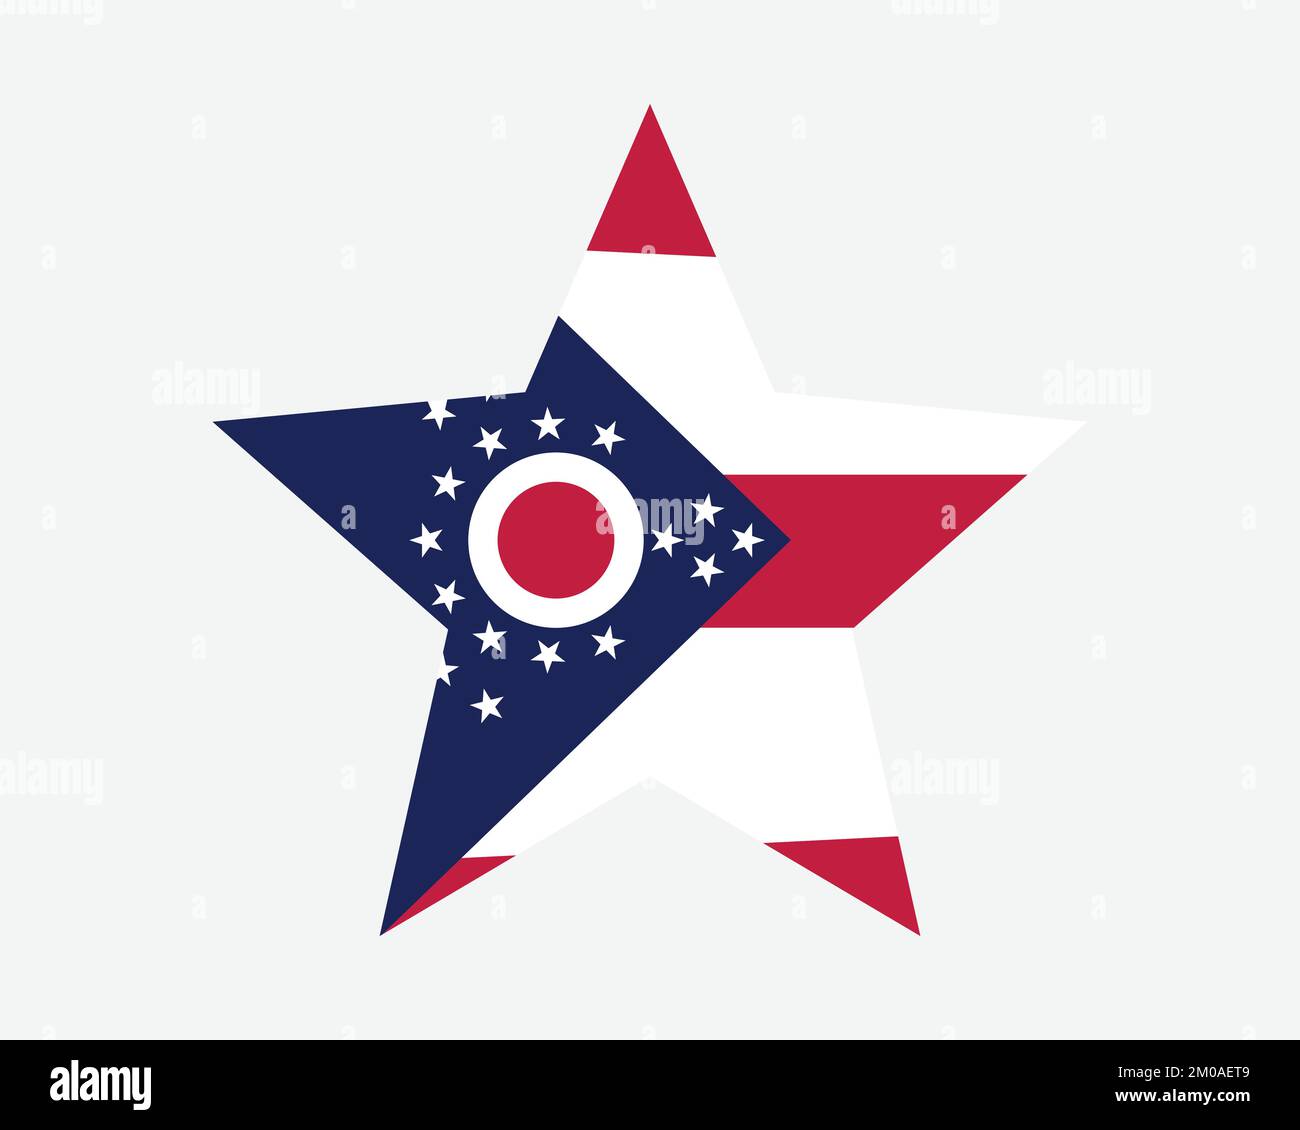 Bandiera Ohio Star. OH USA Five Point Star Shape state Flag. Buckeye Ohioan US Banner icona simbolo vettoriale piatta Illustrazione grafica Illustrazione Vettoriale